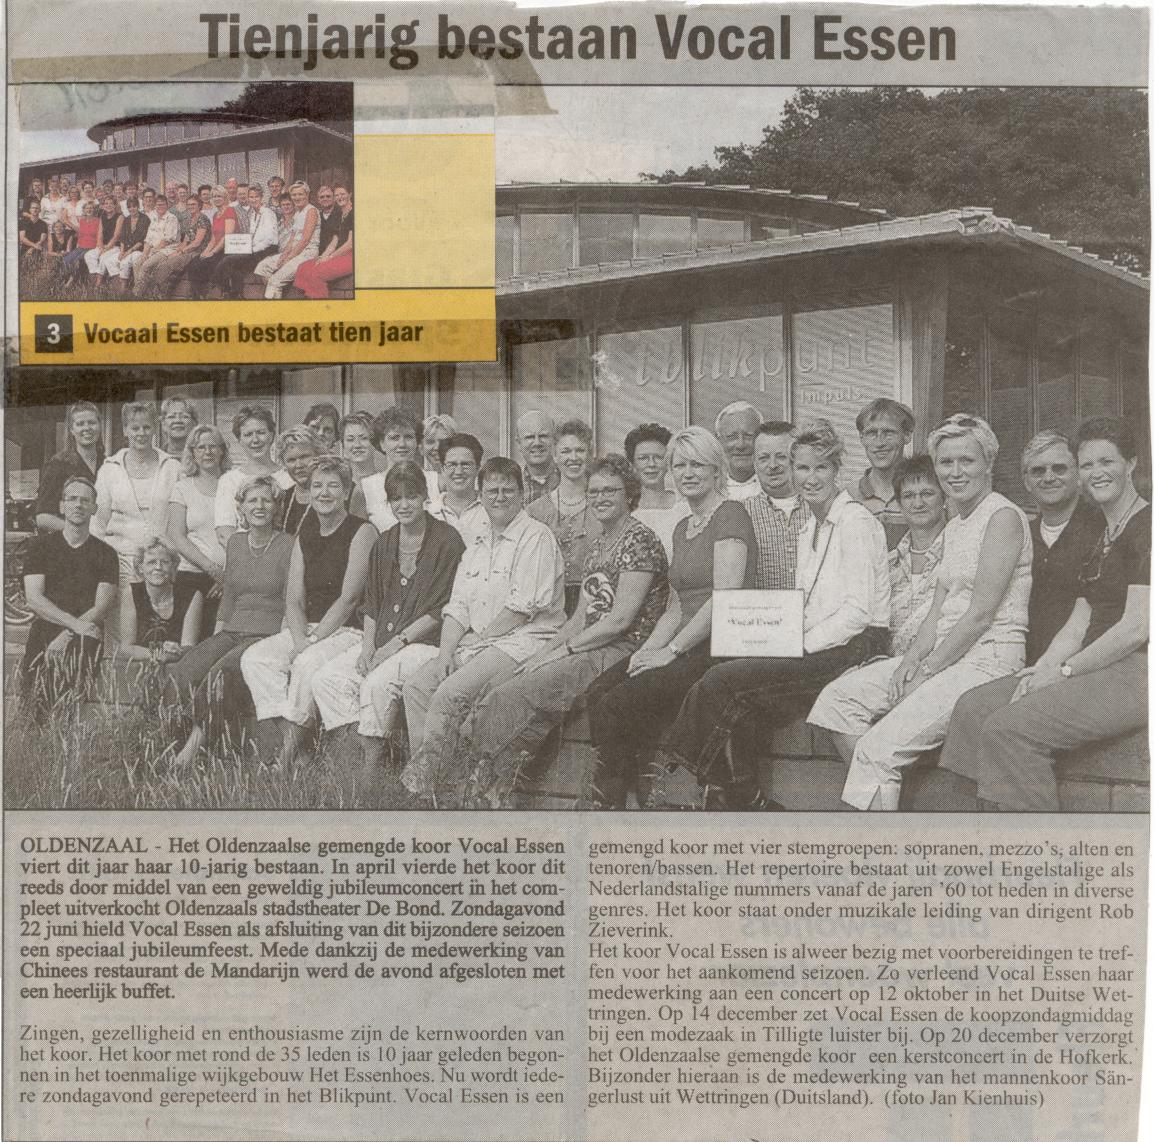 Vocal Essen 10 jaar